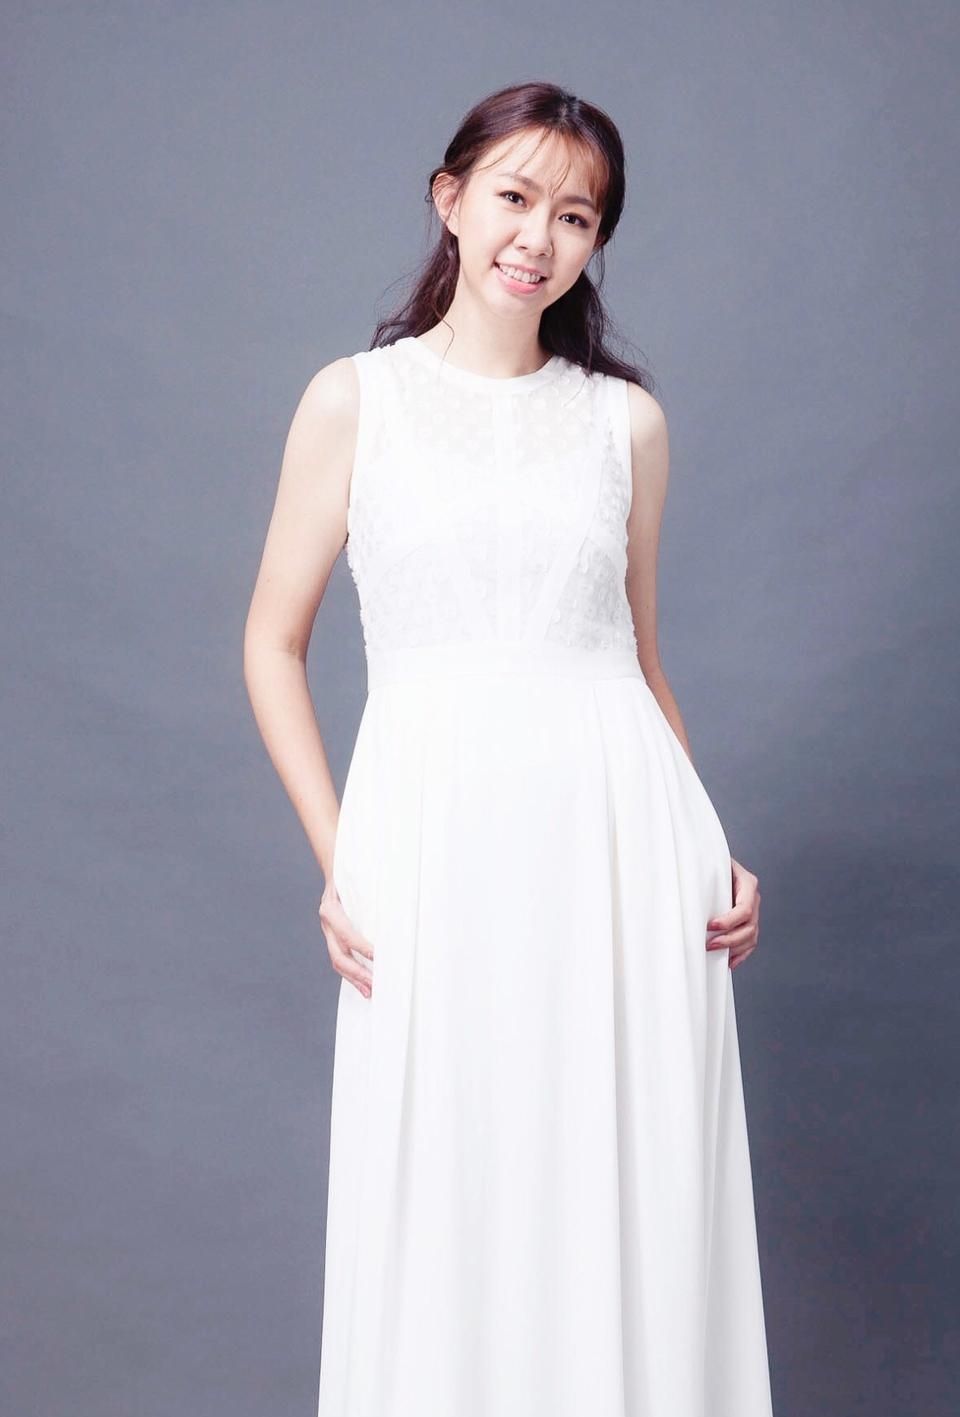 卓依婷一身白色连衣裙看上去好美